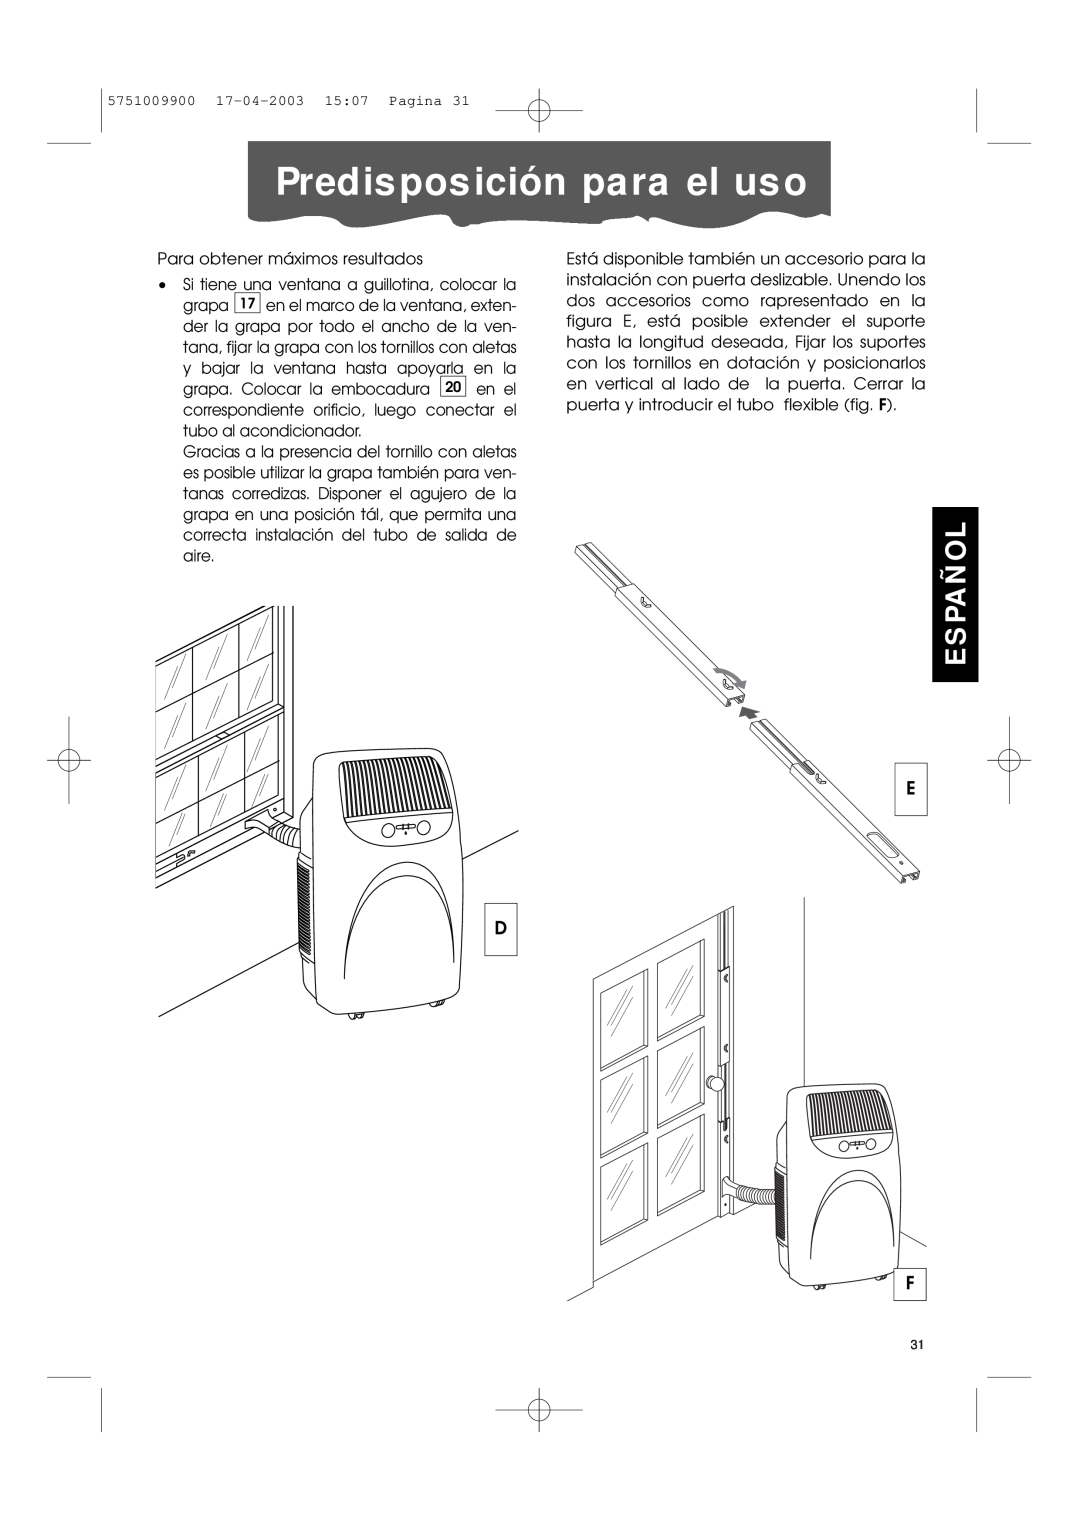 DeLonghi Pac 1000 manual Predisposición para el uso, Español, Para obtener máximos resultados 